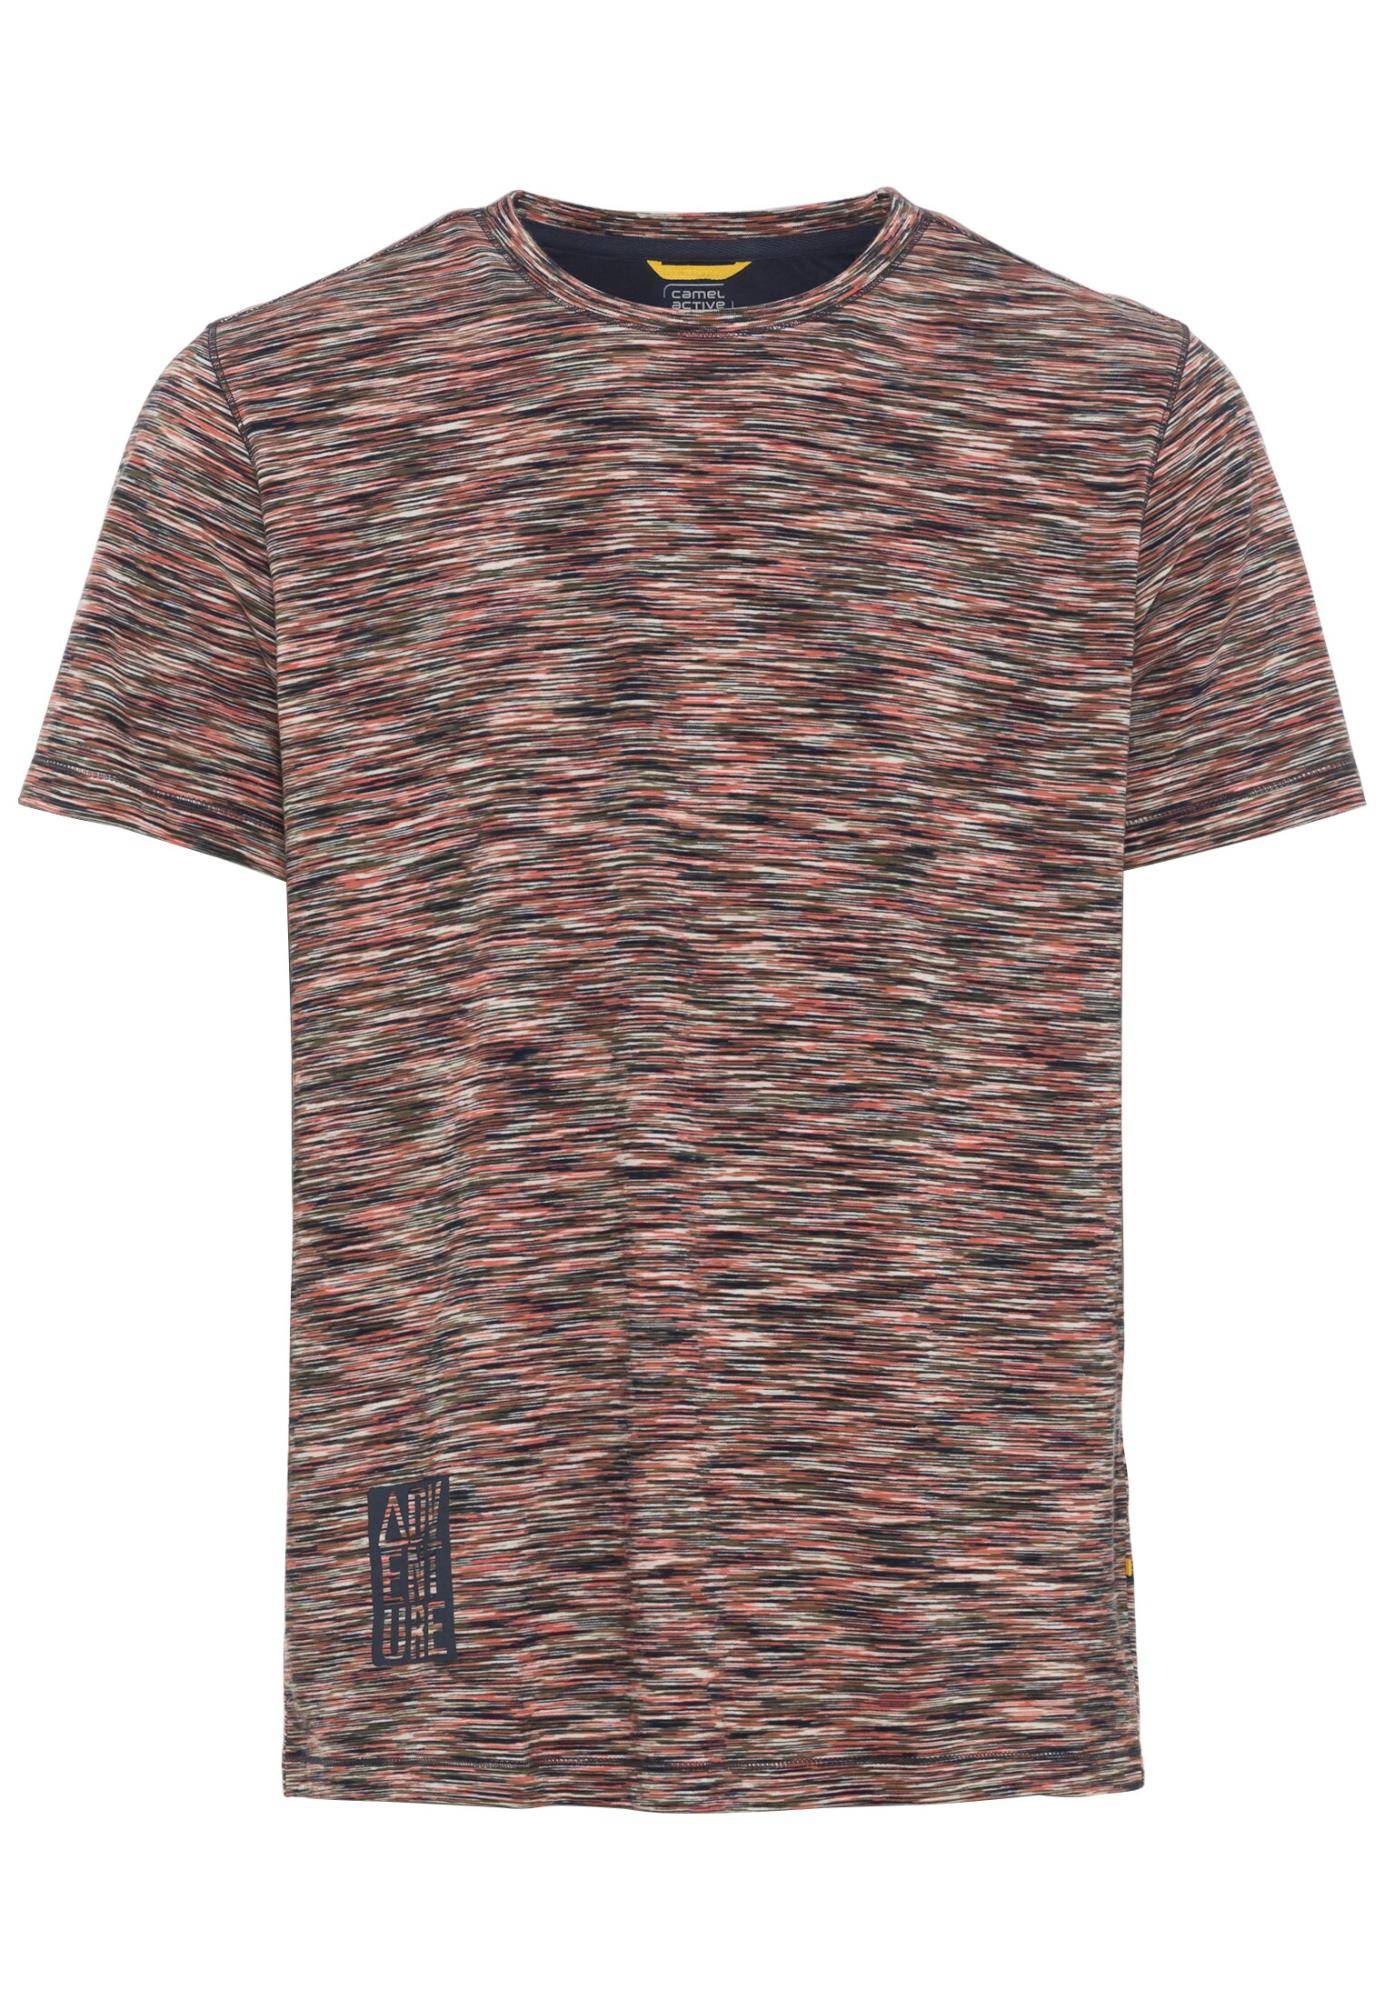 Мужская футболка Camel Active, коралловая, цвет коралловый, размер 48 - фото 1